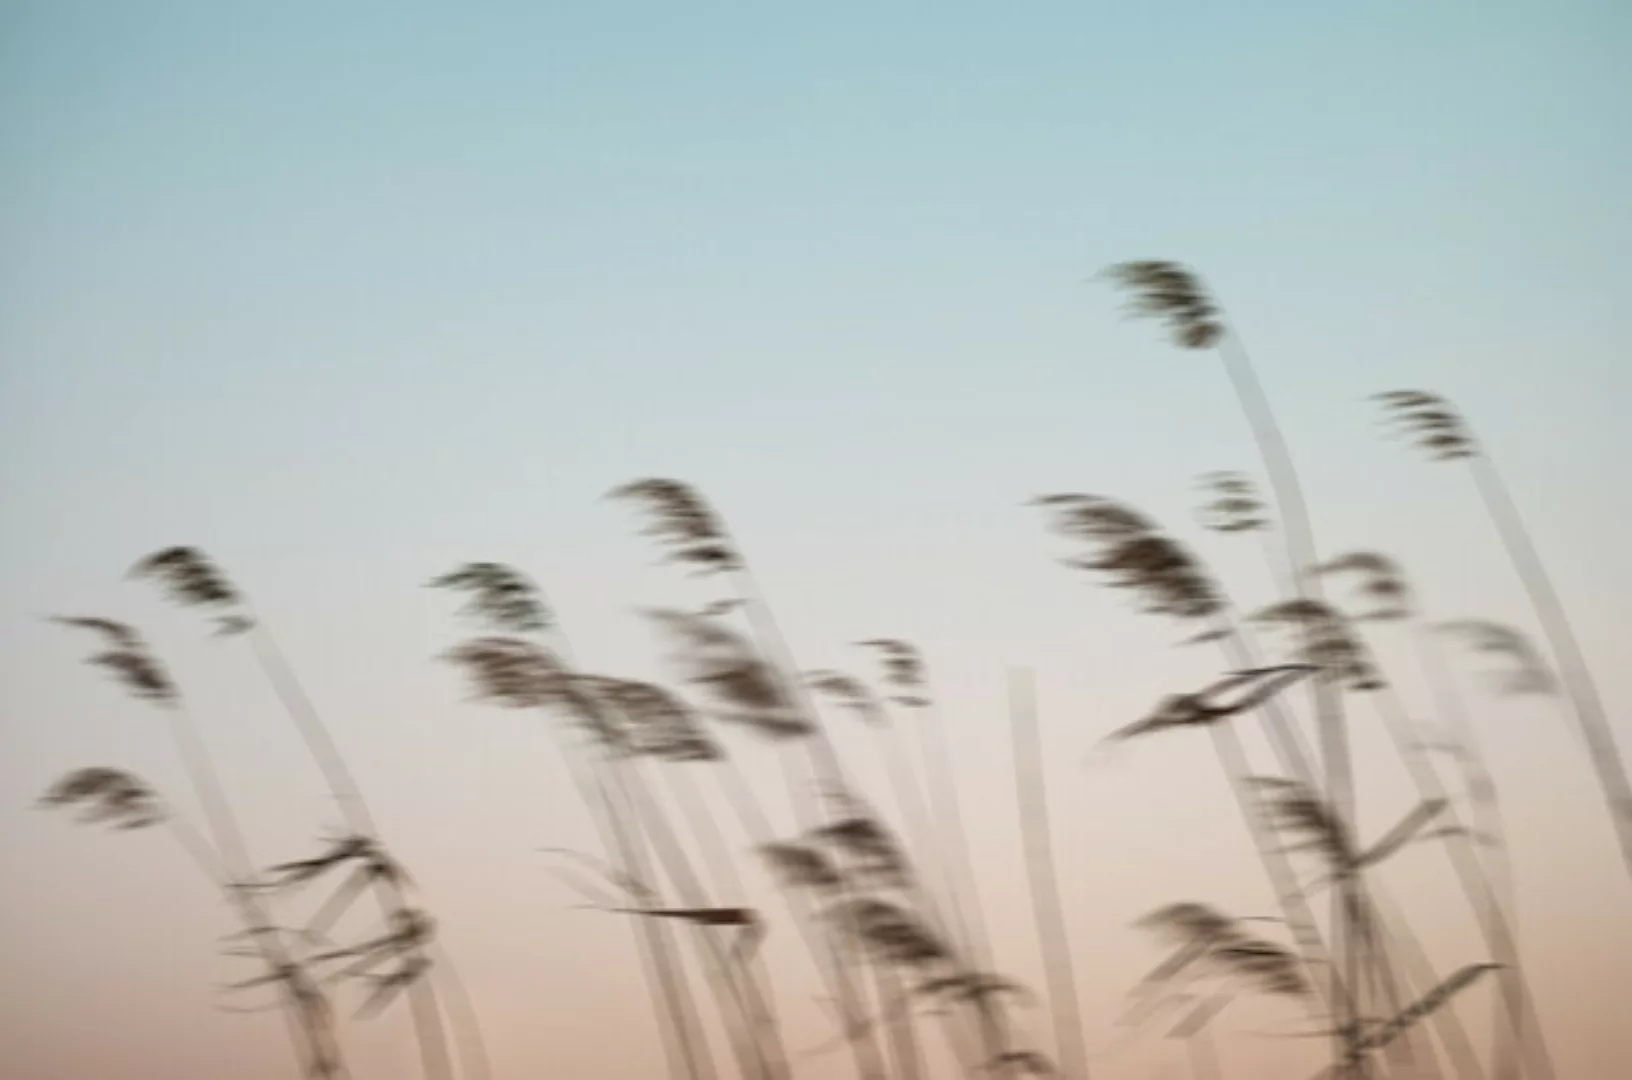 Poster / Leinwandbild - Reeds In The Wind günstig online kaufen